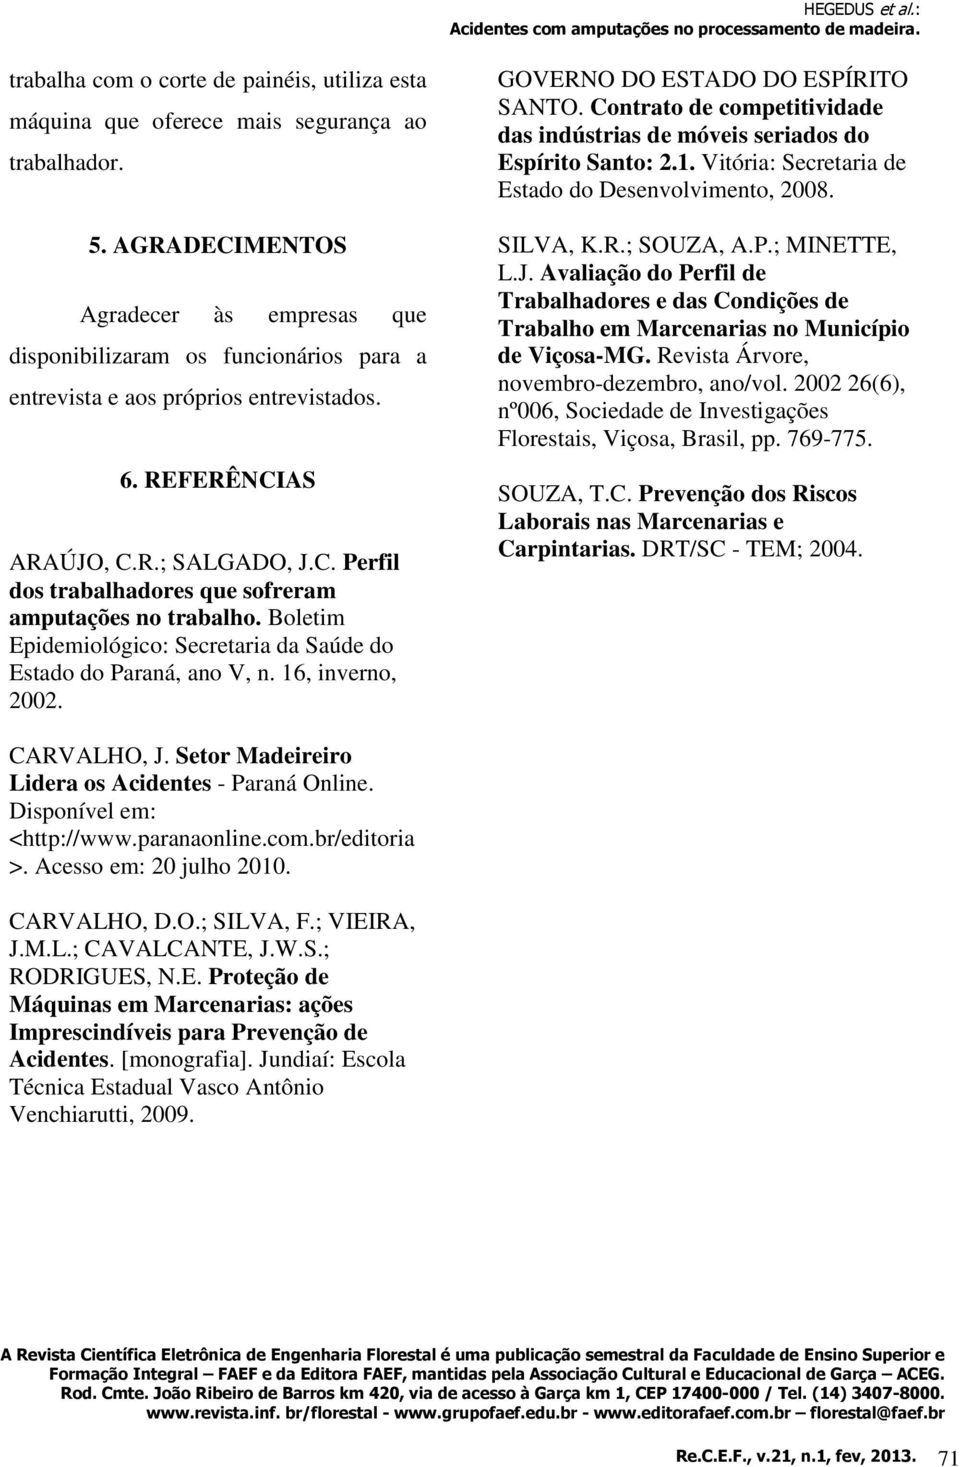 Boletim Epidemiológico: Secretaria da Saúde do Estado do Paraná, ano V, n. 16, inverno, 2002. GOVERNO DO ESTADO DO ESPÍRITO SANTO.